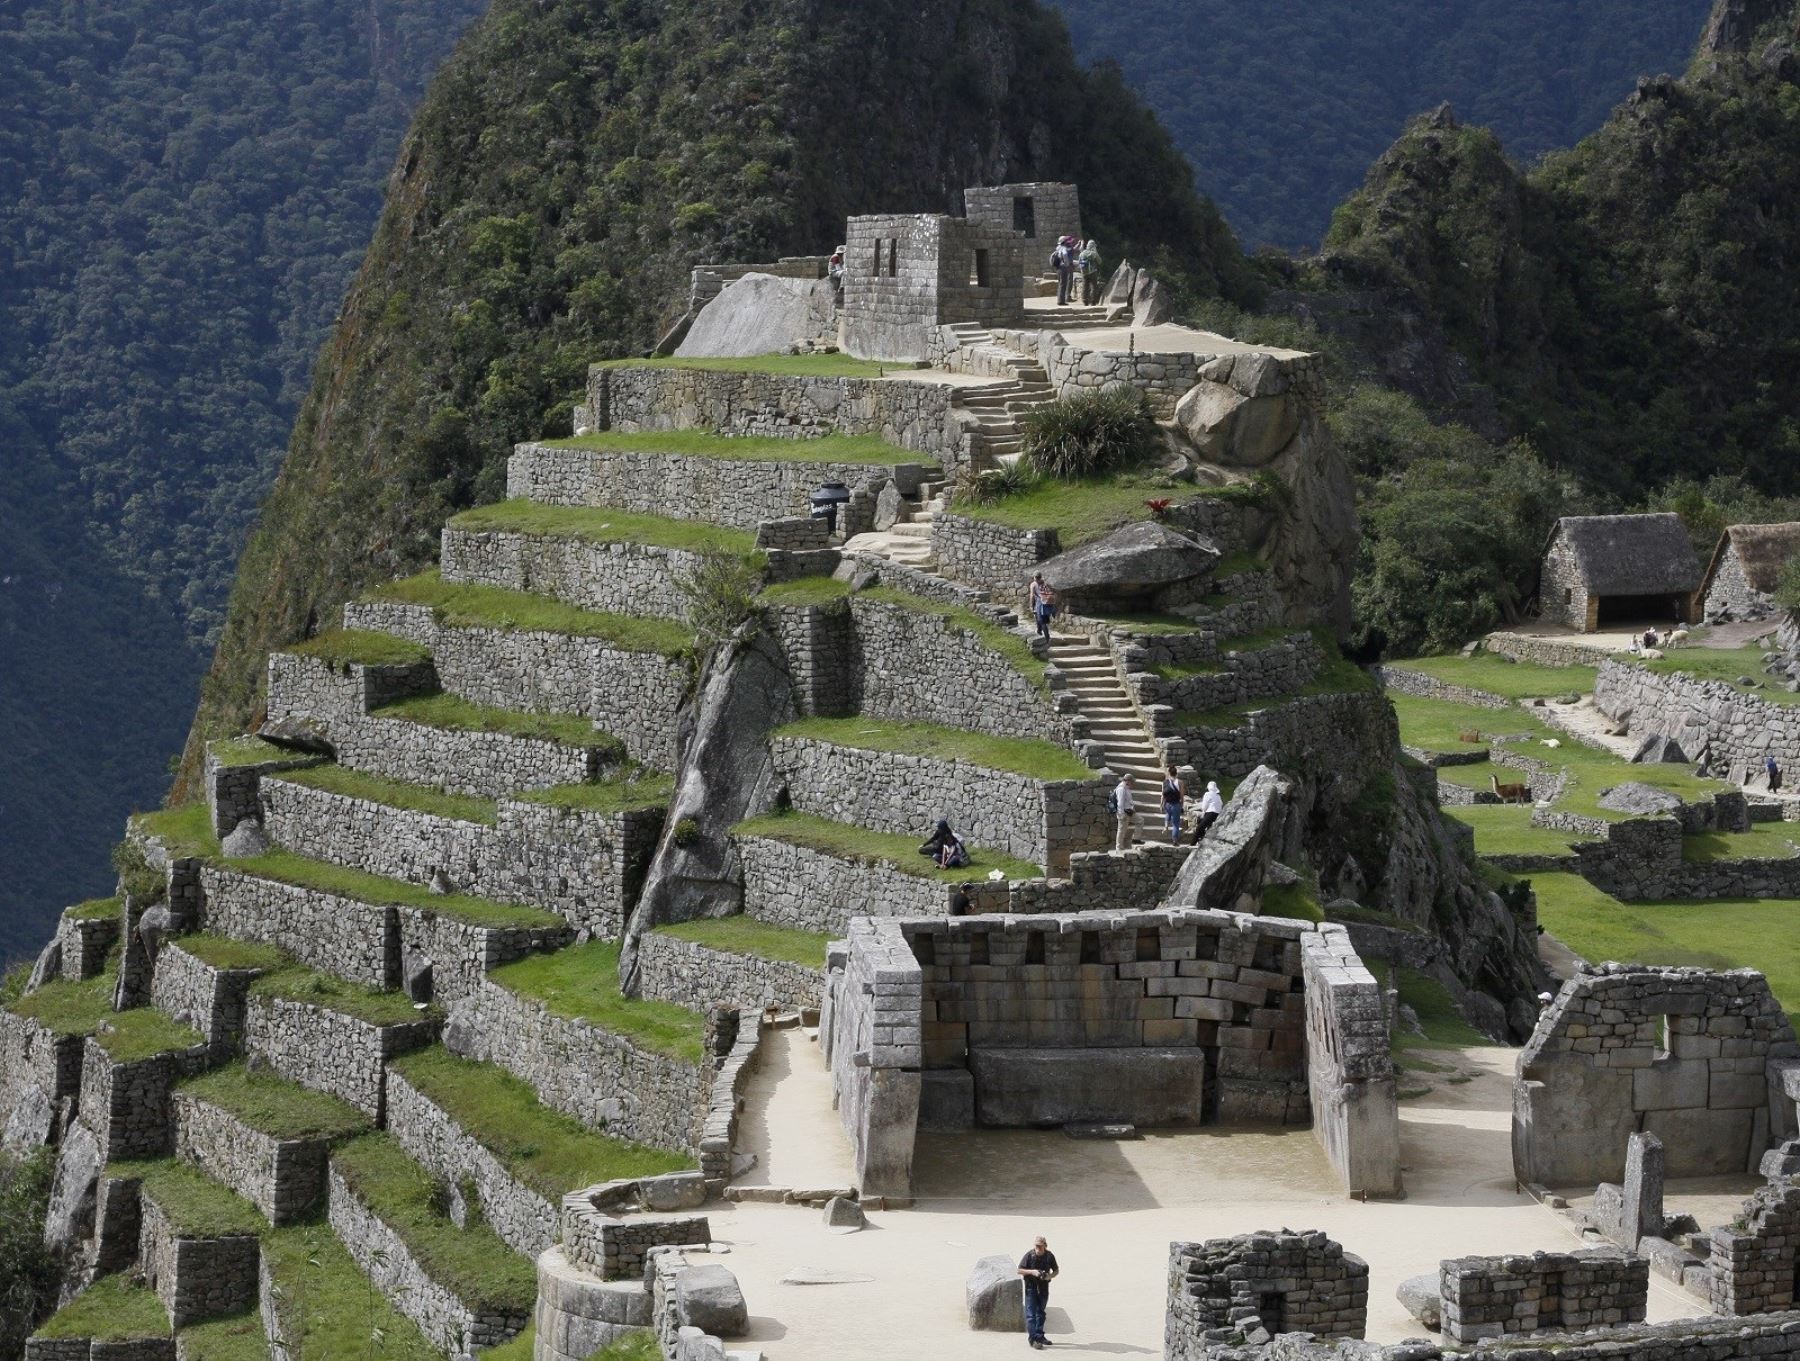 Hasta el 18 de octubre están agotados los boletos electrónicos para ingresar a la ciudadela de Machu Picchu, de acuerdo a la plataforma virtual donde se ofrecen las entradas al principal ícono turístico de Perú. ANDINA/Difusión